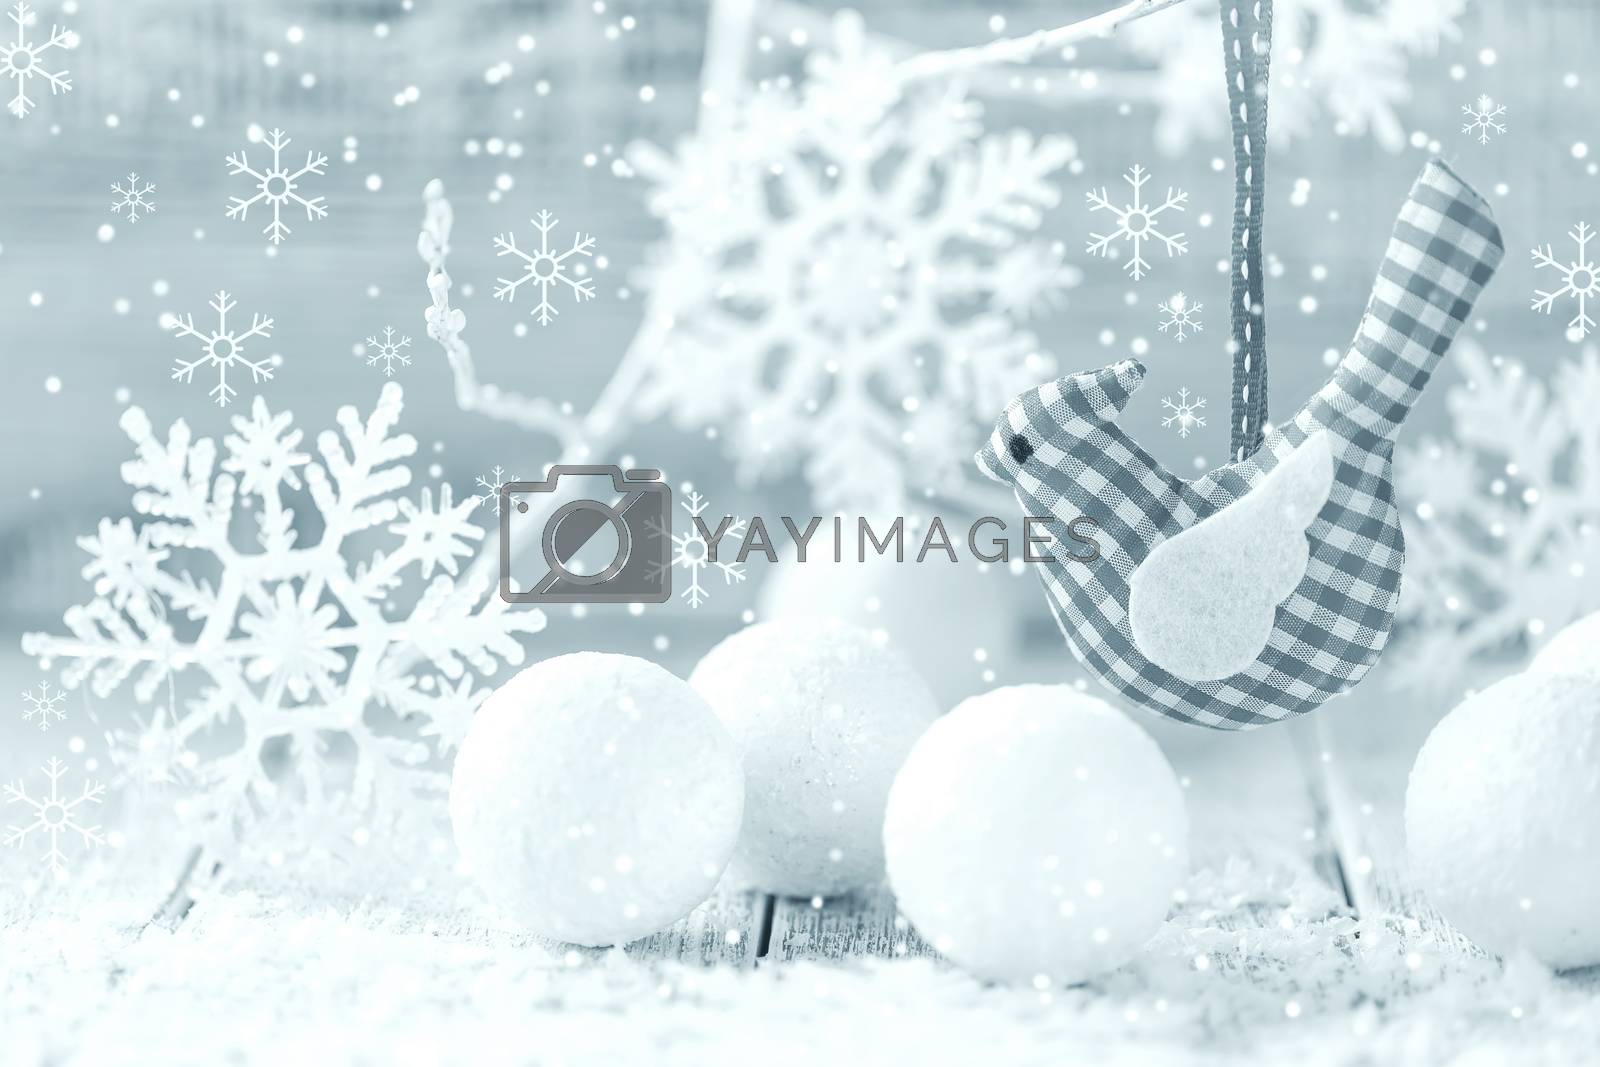 Royalty free image of Christmas decoration by yelenayemchuk